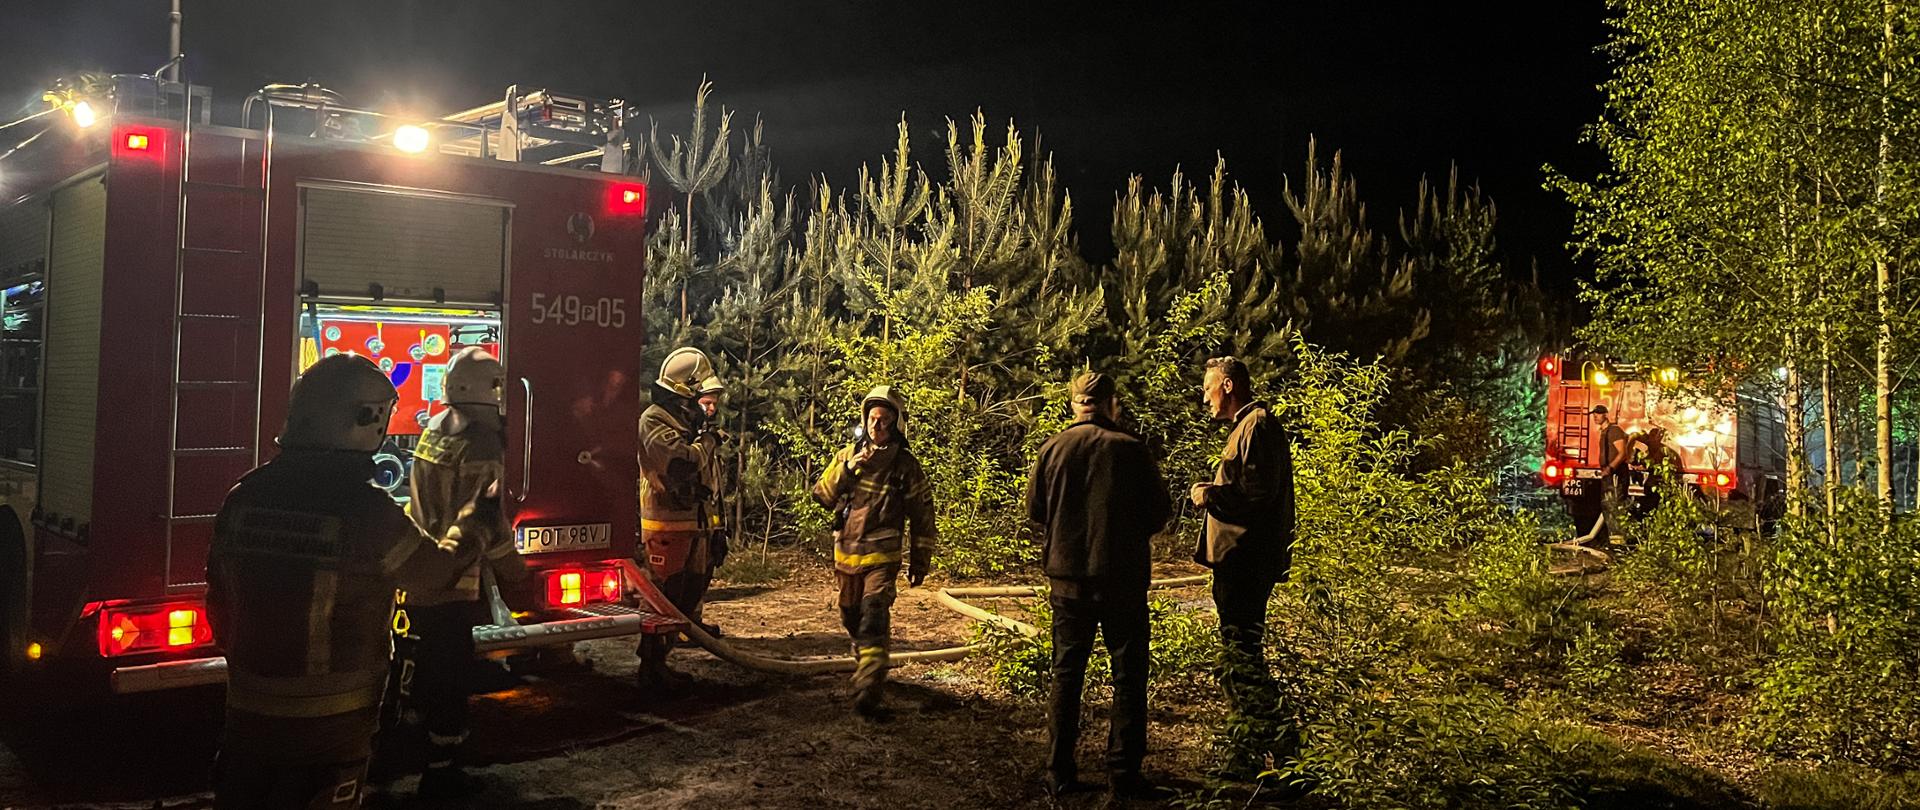 Na zdjęciu strażacy w ubraniach specjalnych stoją przy samochodzie strażackim po lewej stronie, który oświetla teren działań. Na środku stoją leśnicy i obserwują działania gaśnicze. W tle widać las. Po prawej stronie w głębi lasu stoi samochód gaśniczy. Zdjęcie wykonane porą nocną.